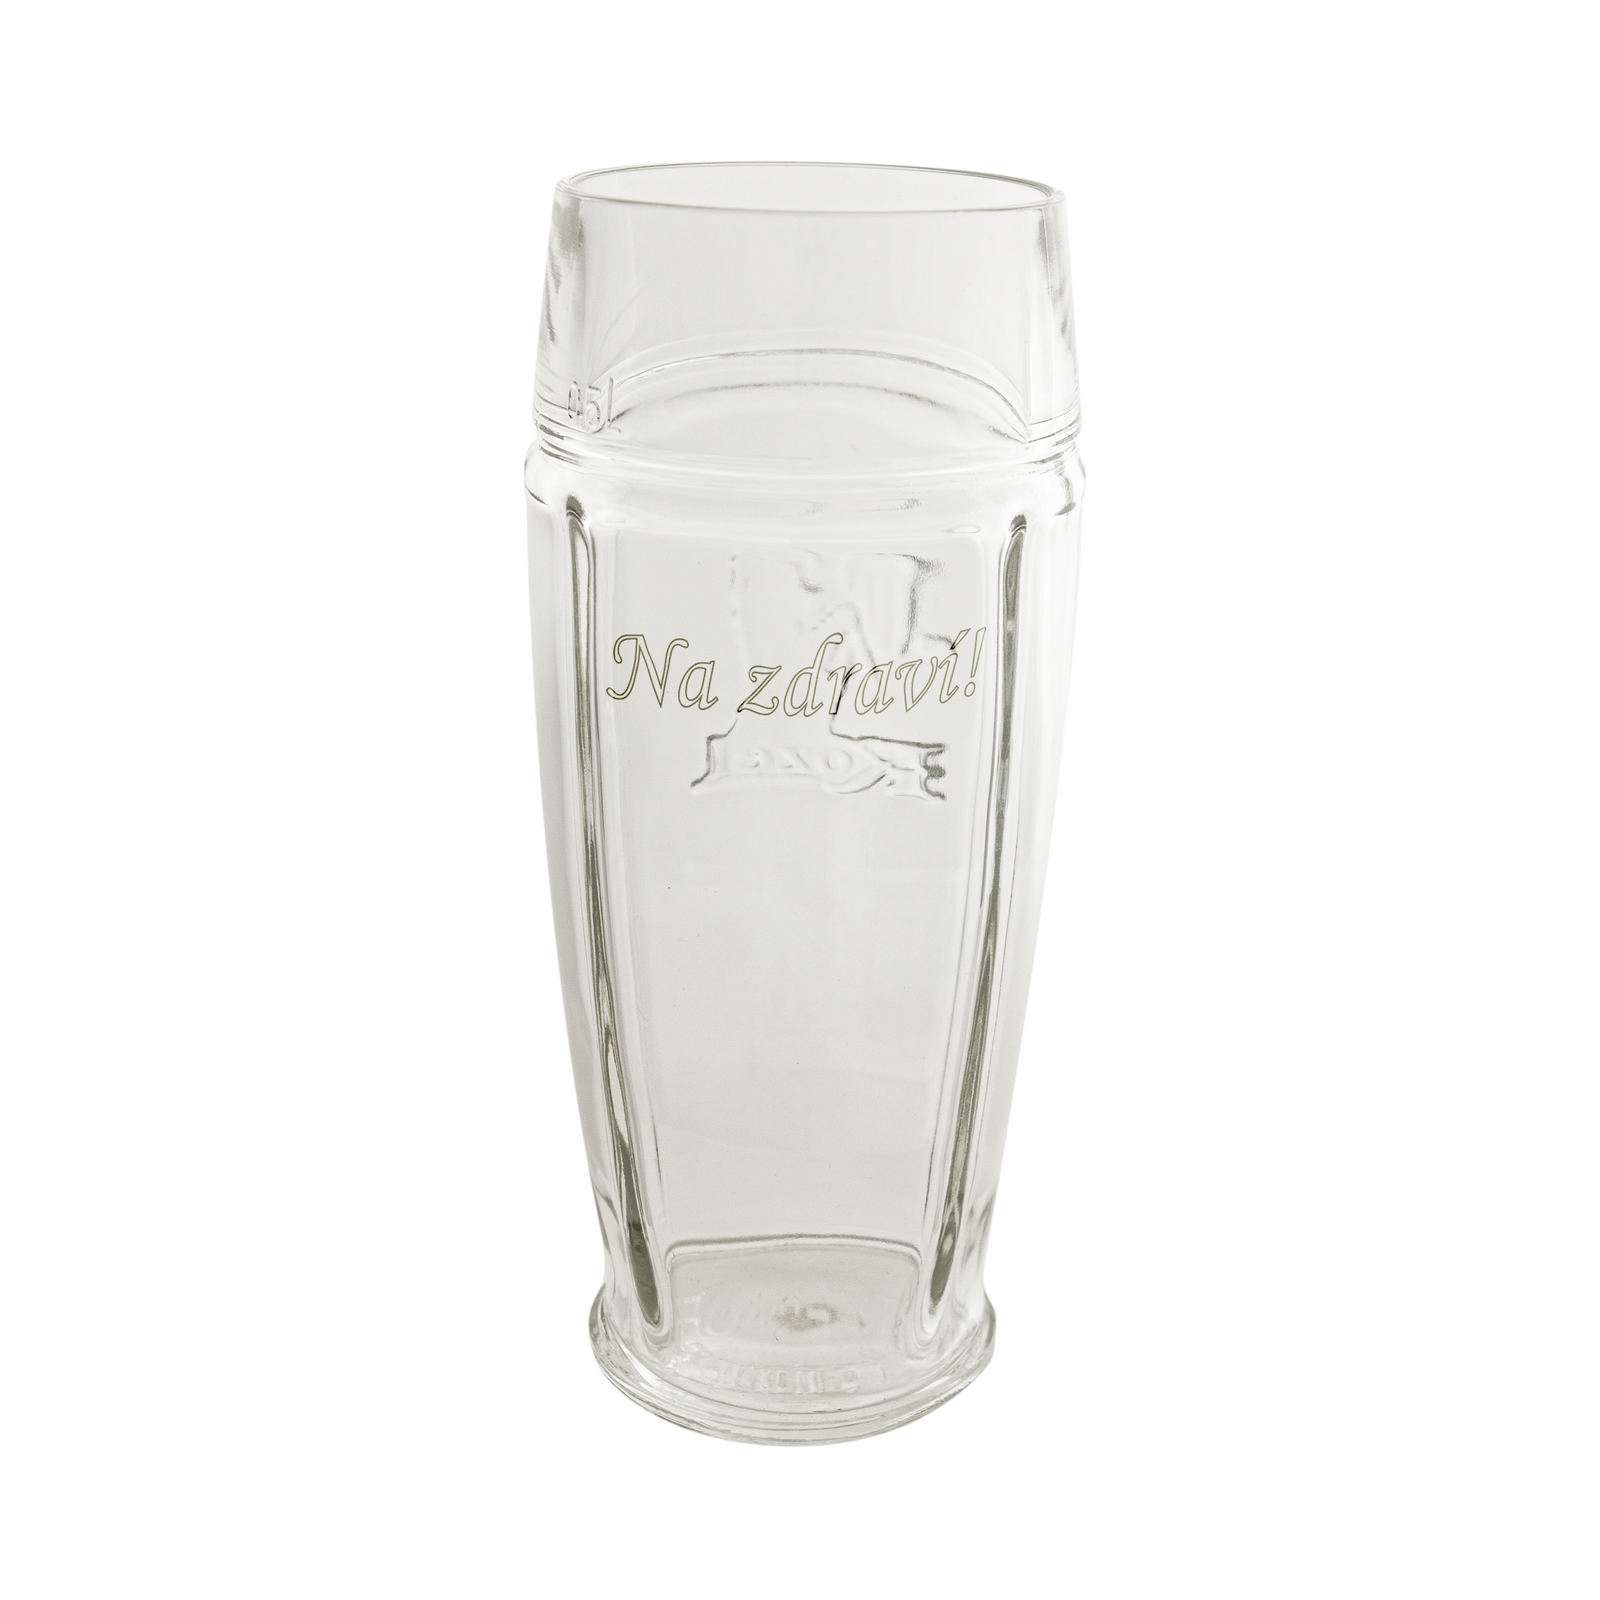 Kozel 0.5L glass with inscription